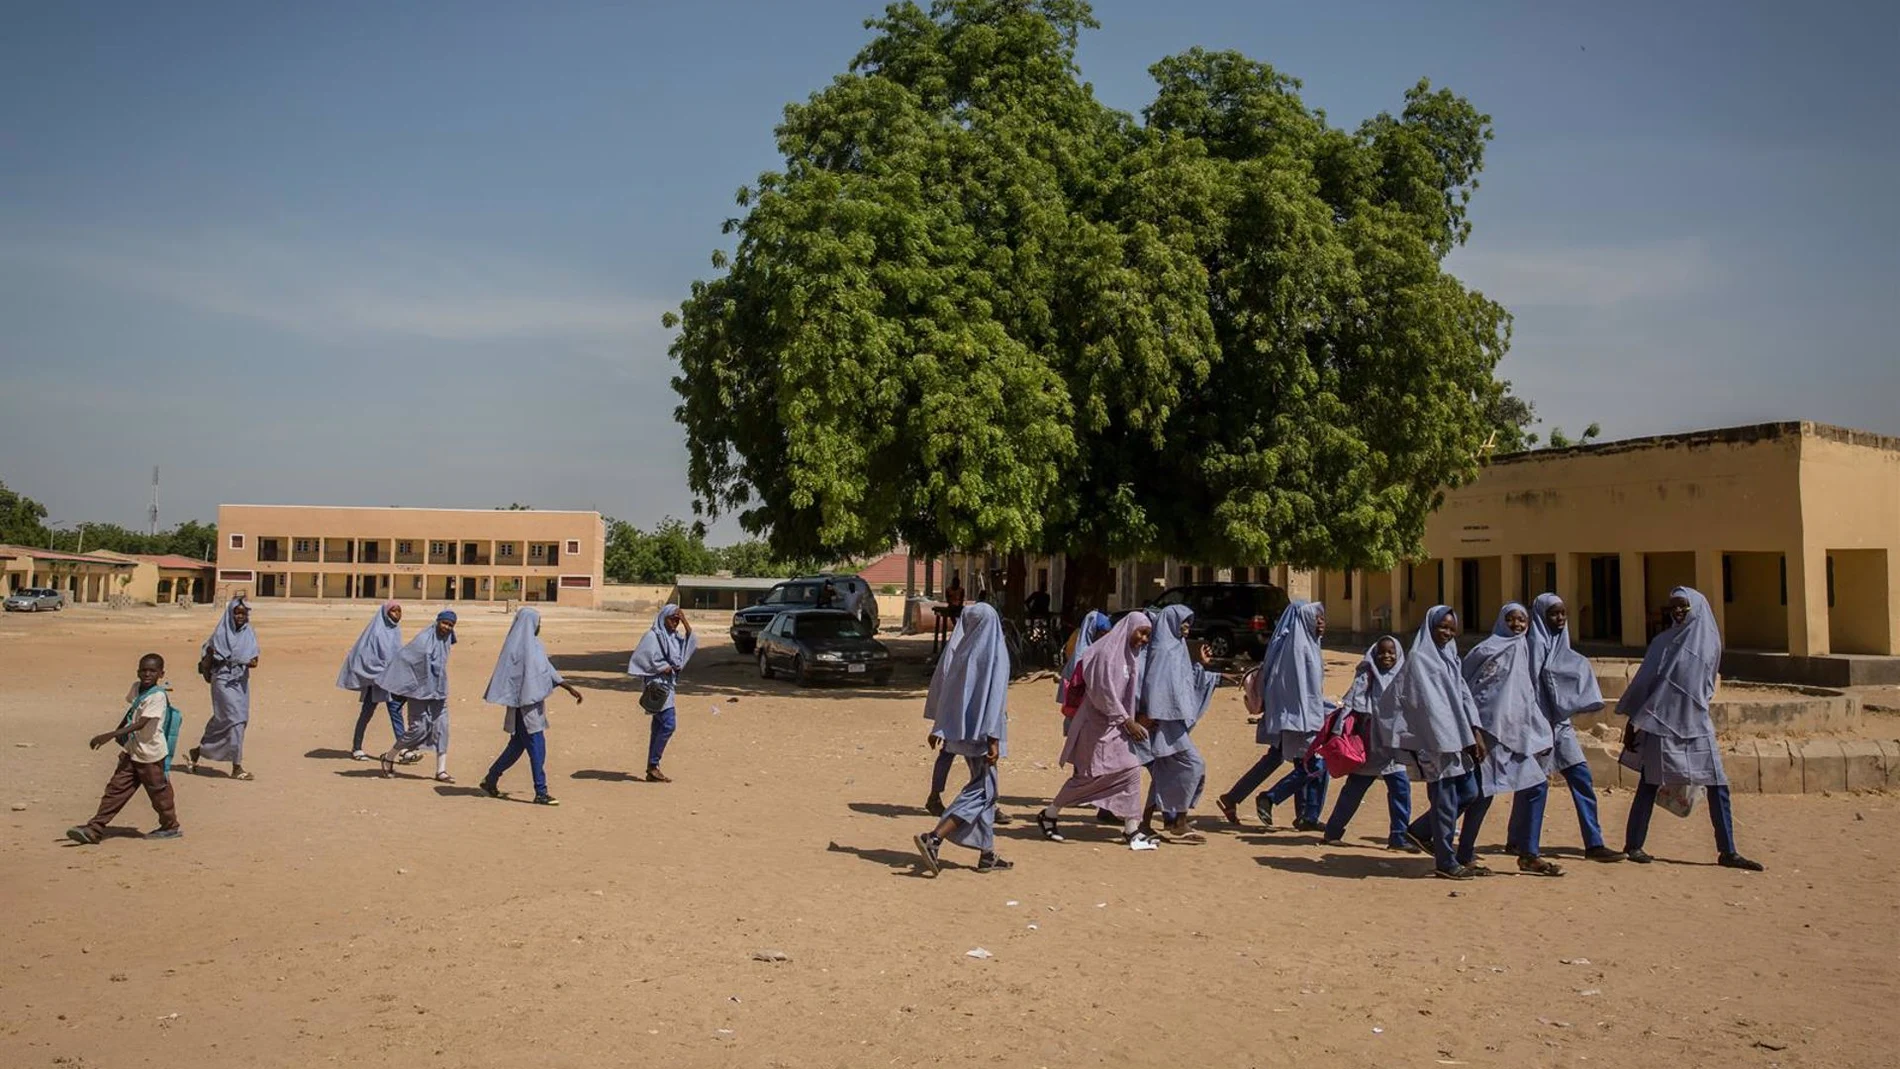 Imagen de archivo de alumnos en una escuela en Nigeria